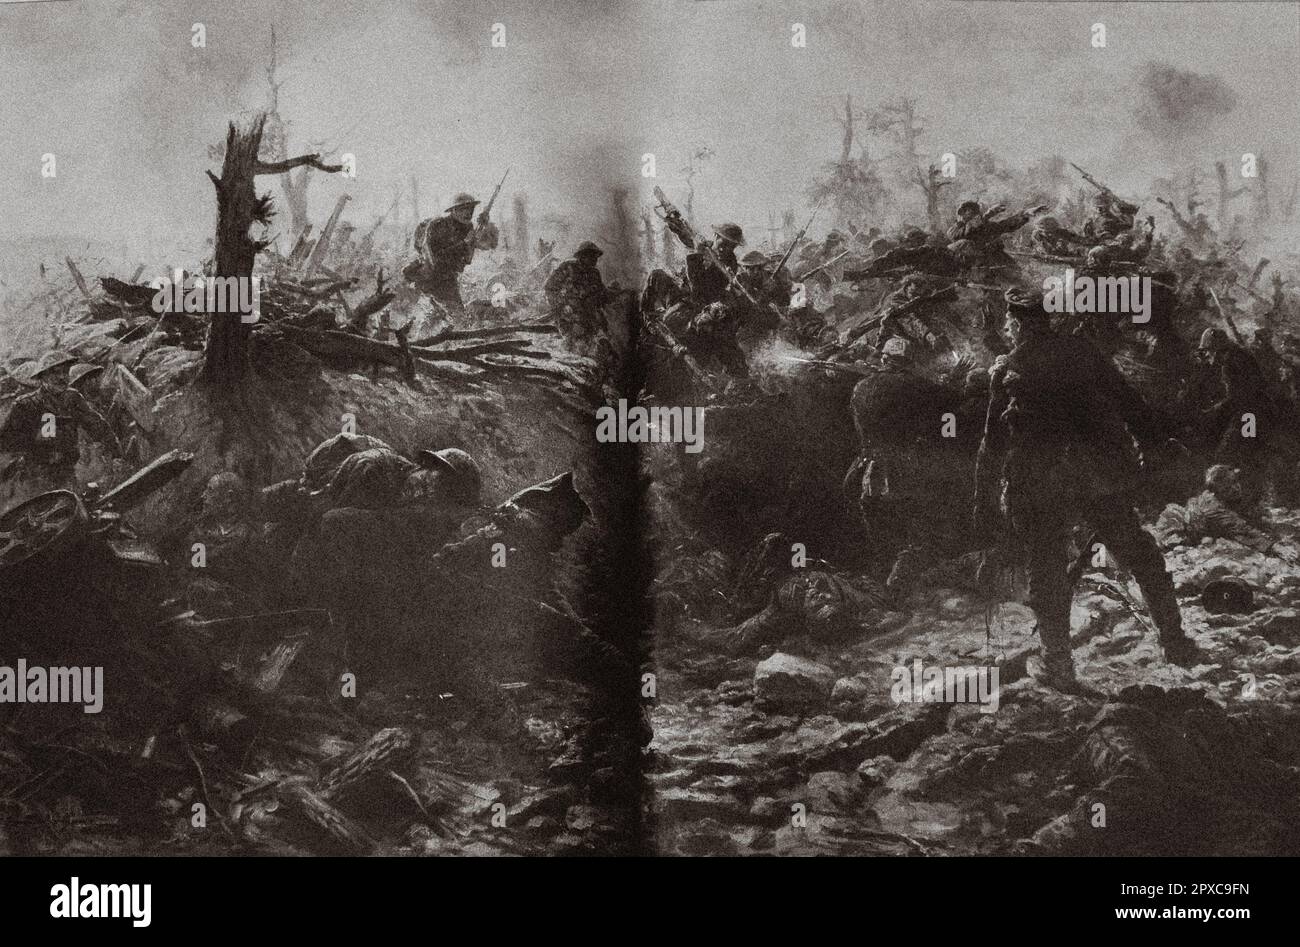 Il 15 luglio 1916, gli inglesi catturarono con baionette in un attacco frenetico, posizioni tedesche nella zona di Longueval, che chiamarono 'Bosco del Diavolo'. Foto Stock